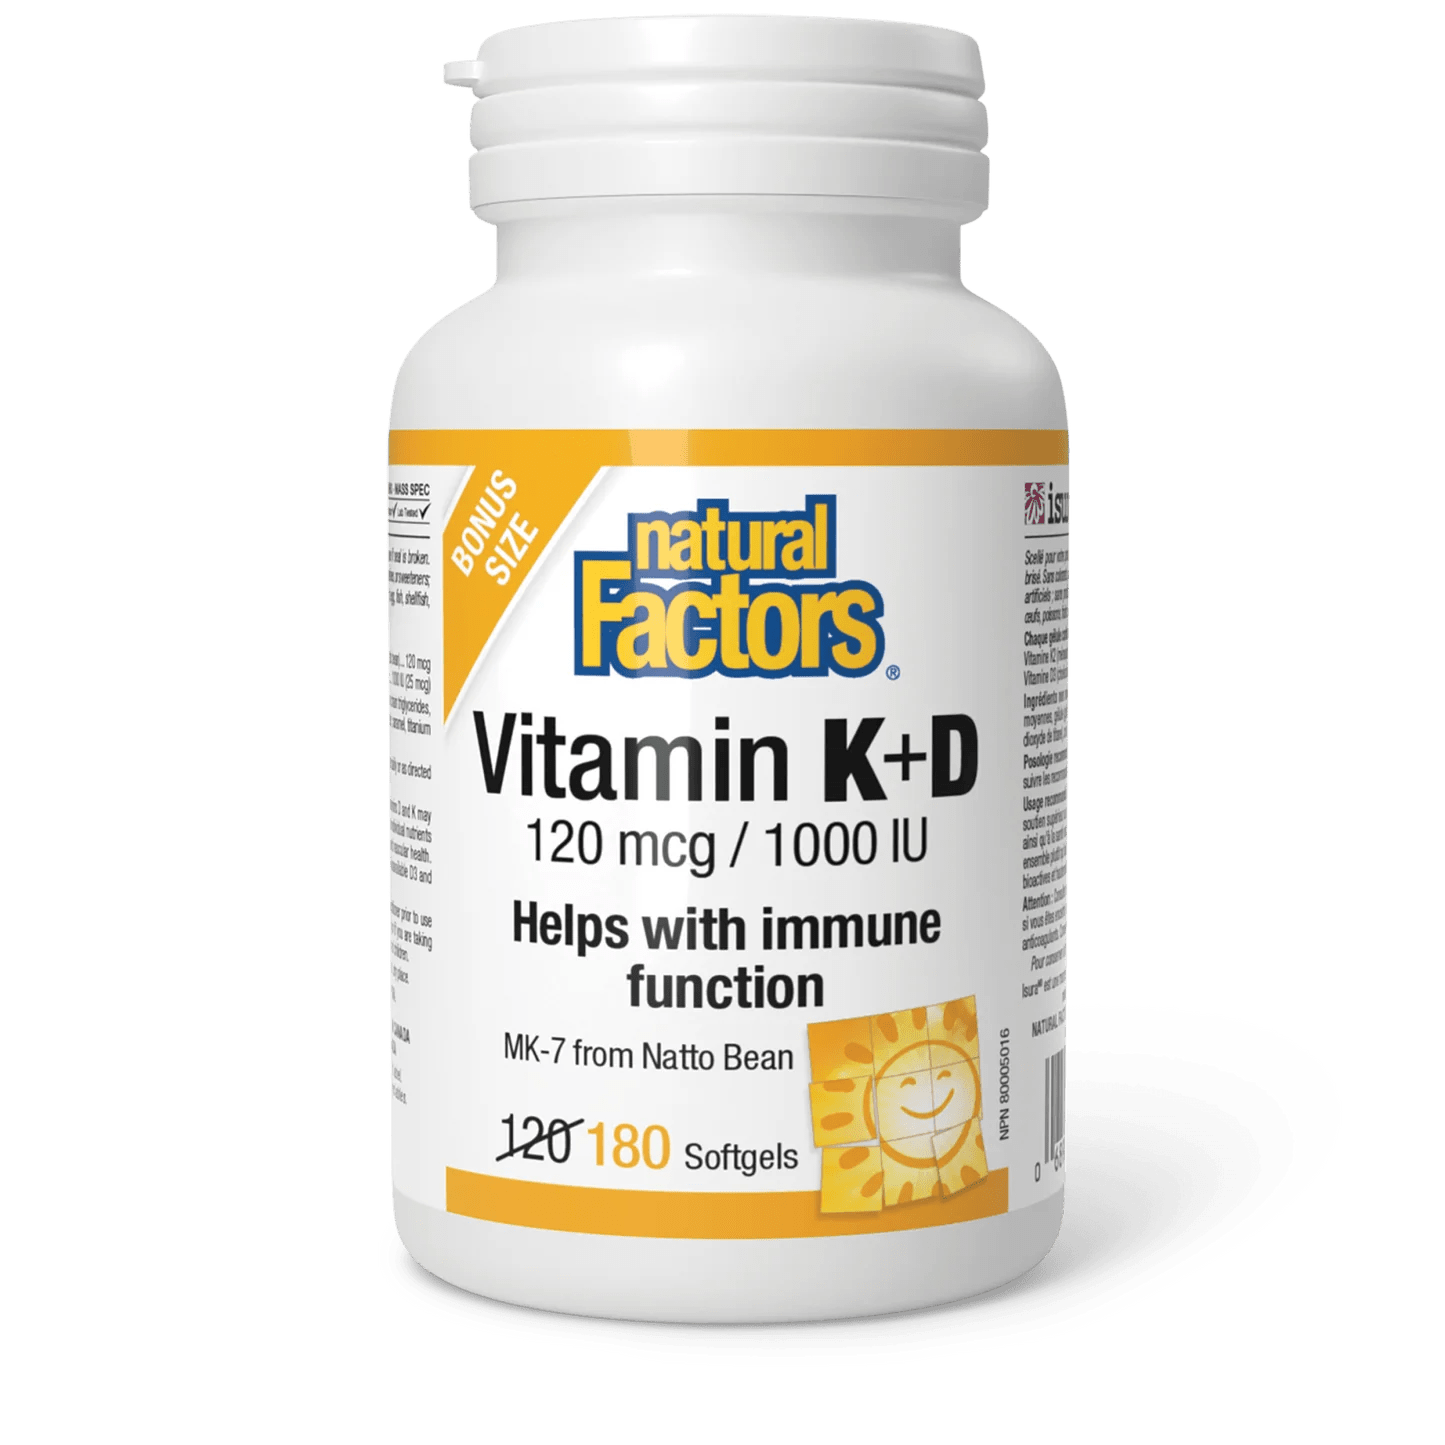 Natural Factors Vitamin K+D 120 mcg/1000 IU bonus (180 softgels)